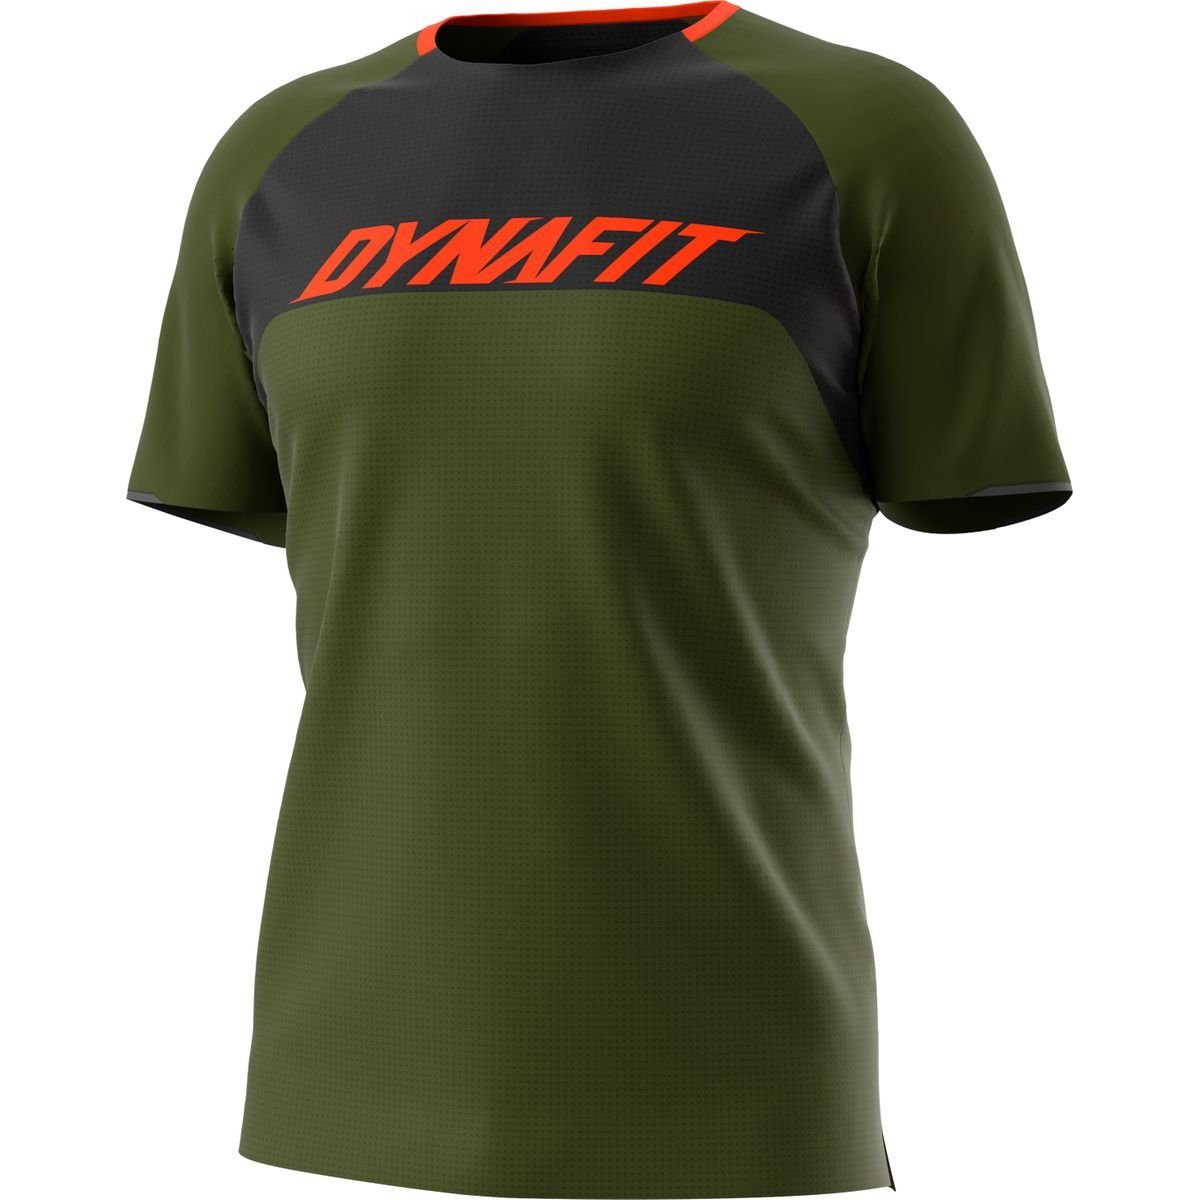 Dynafit T-Shirt RIDE S/S moss TEE winter DynaFit - 5891 M